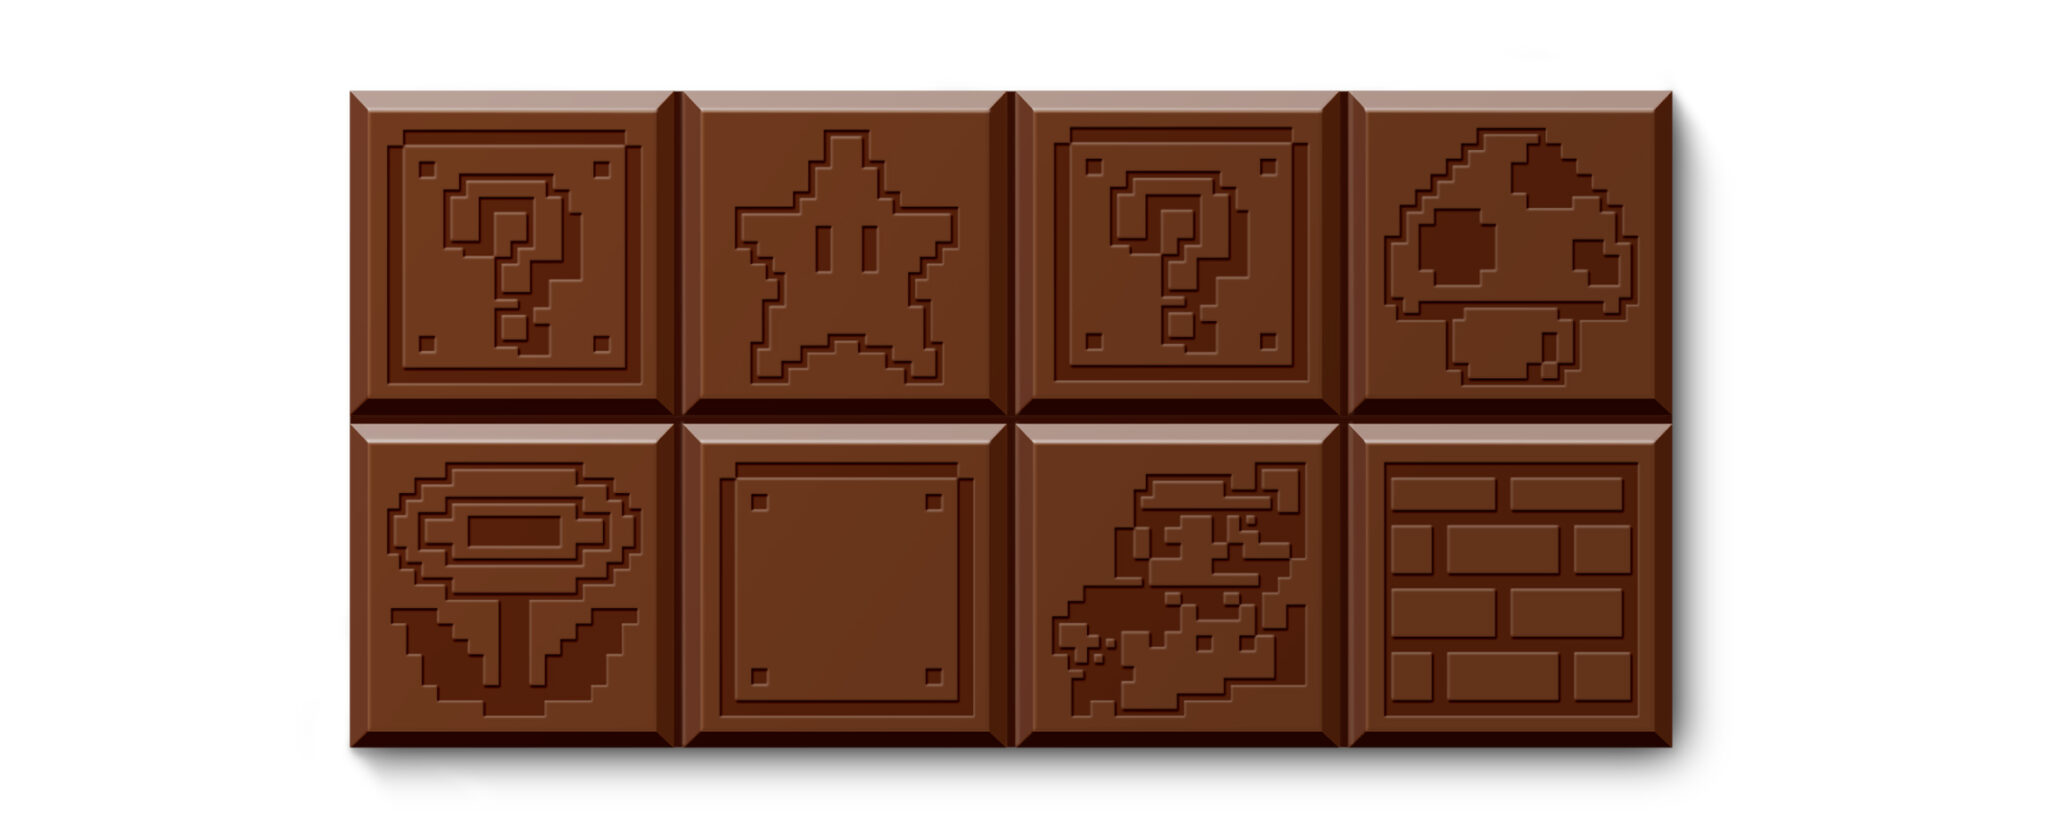 Плитка шоколада состоит. Марио шоколад. Шоколад БРОС. Плитка шоколада со зданием на упаковке. Найдите шоколадки.